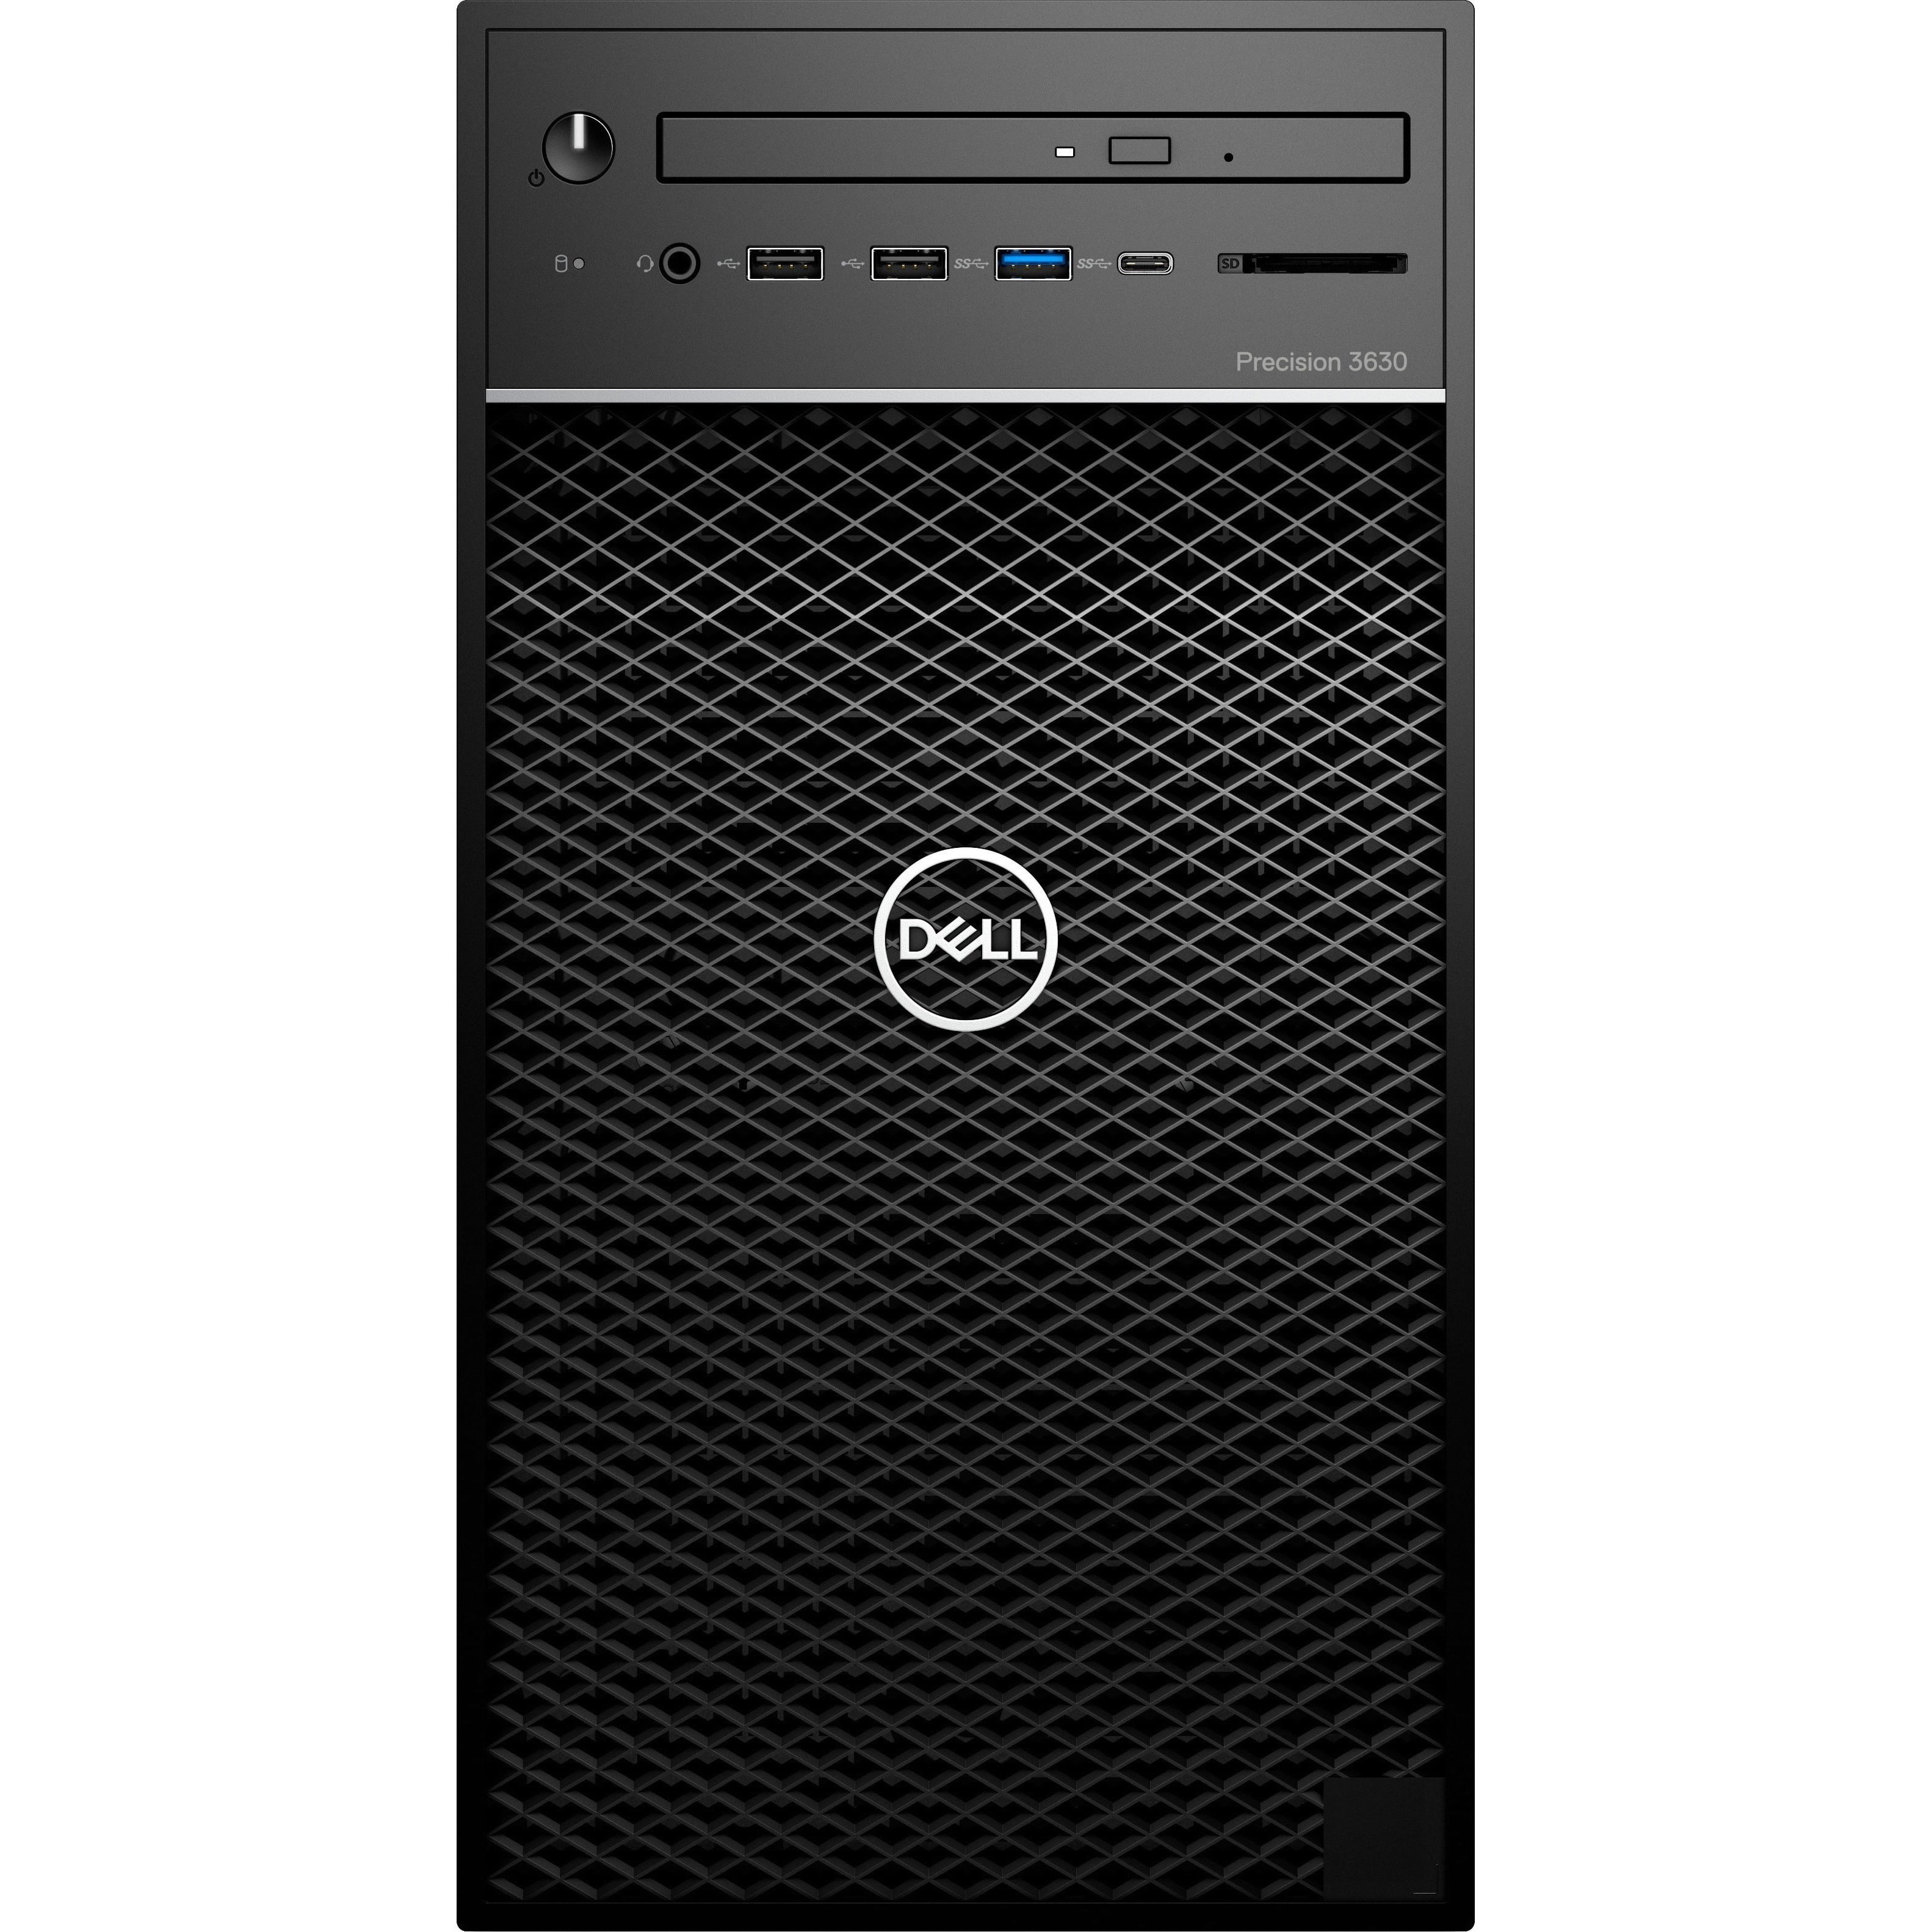 Dell Precision 3000 3630 Workstation - Core i7-9700 - 16GB RAM